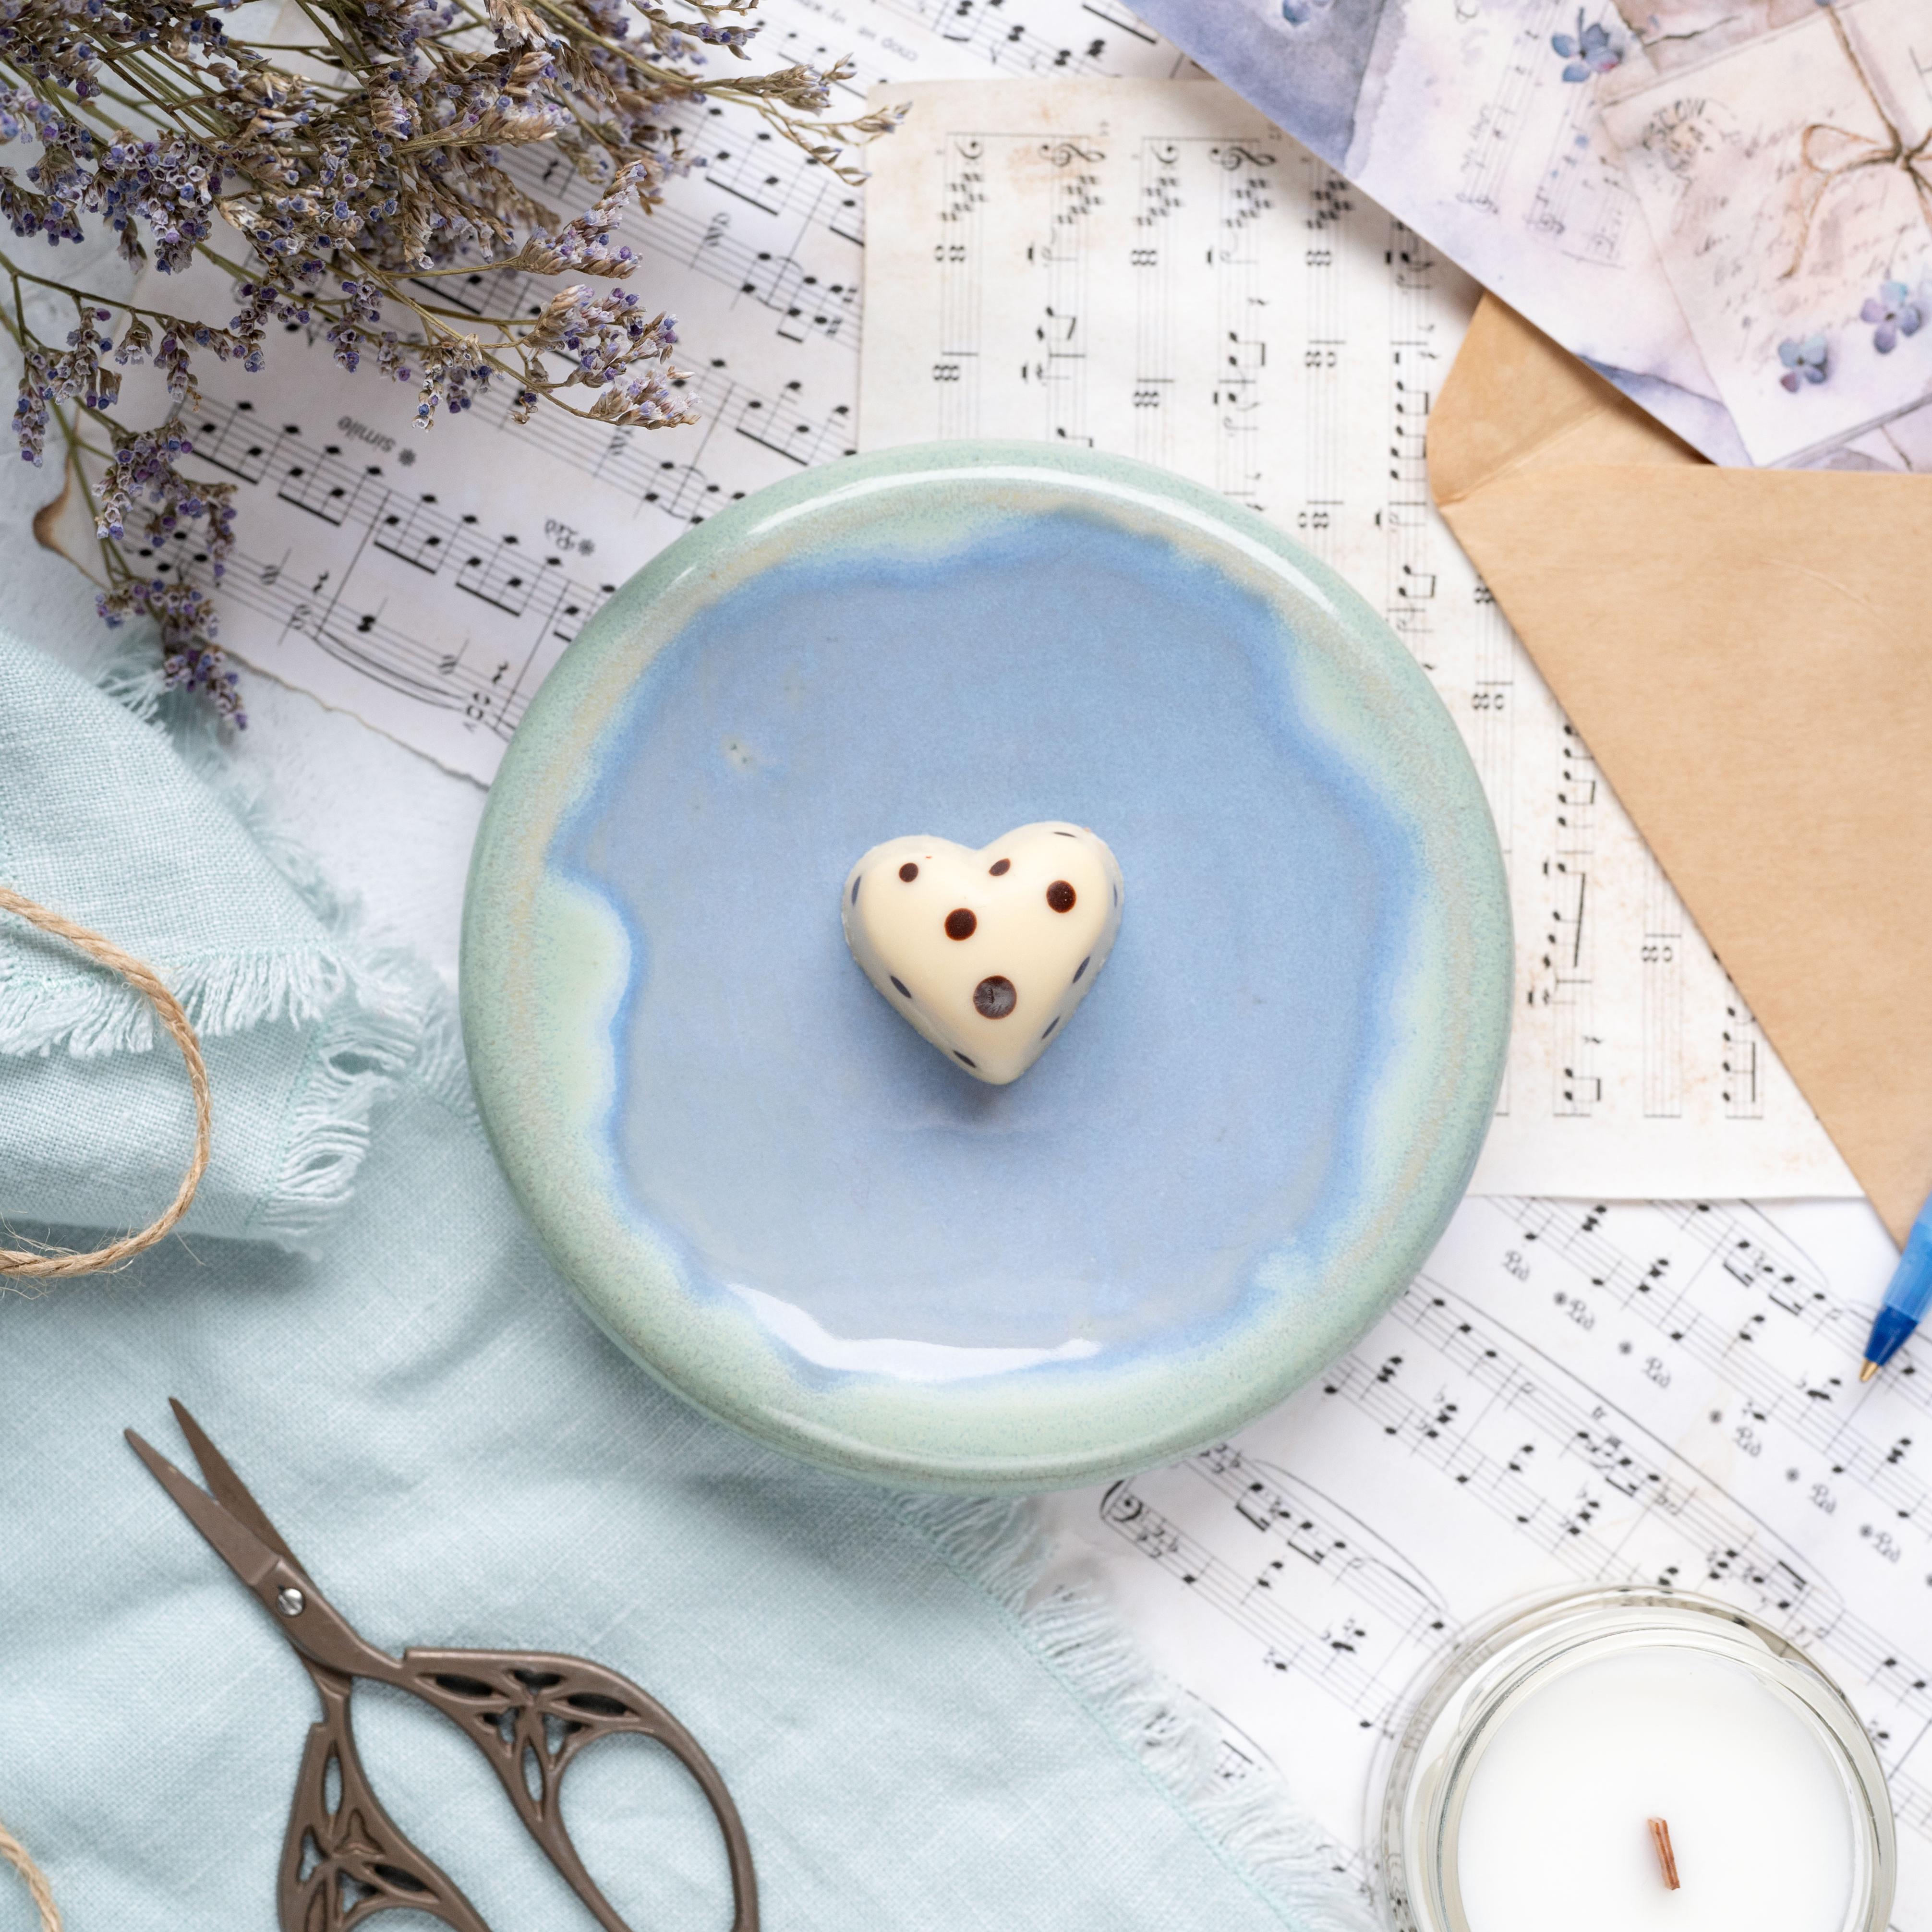 картинка Десертная тарелка Pottery Atelier голубая 12 см - DishWishes.Ru